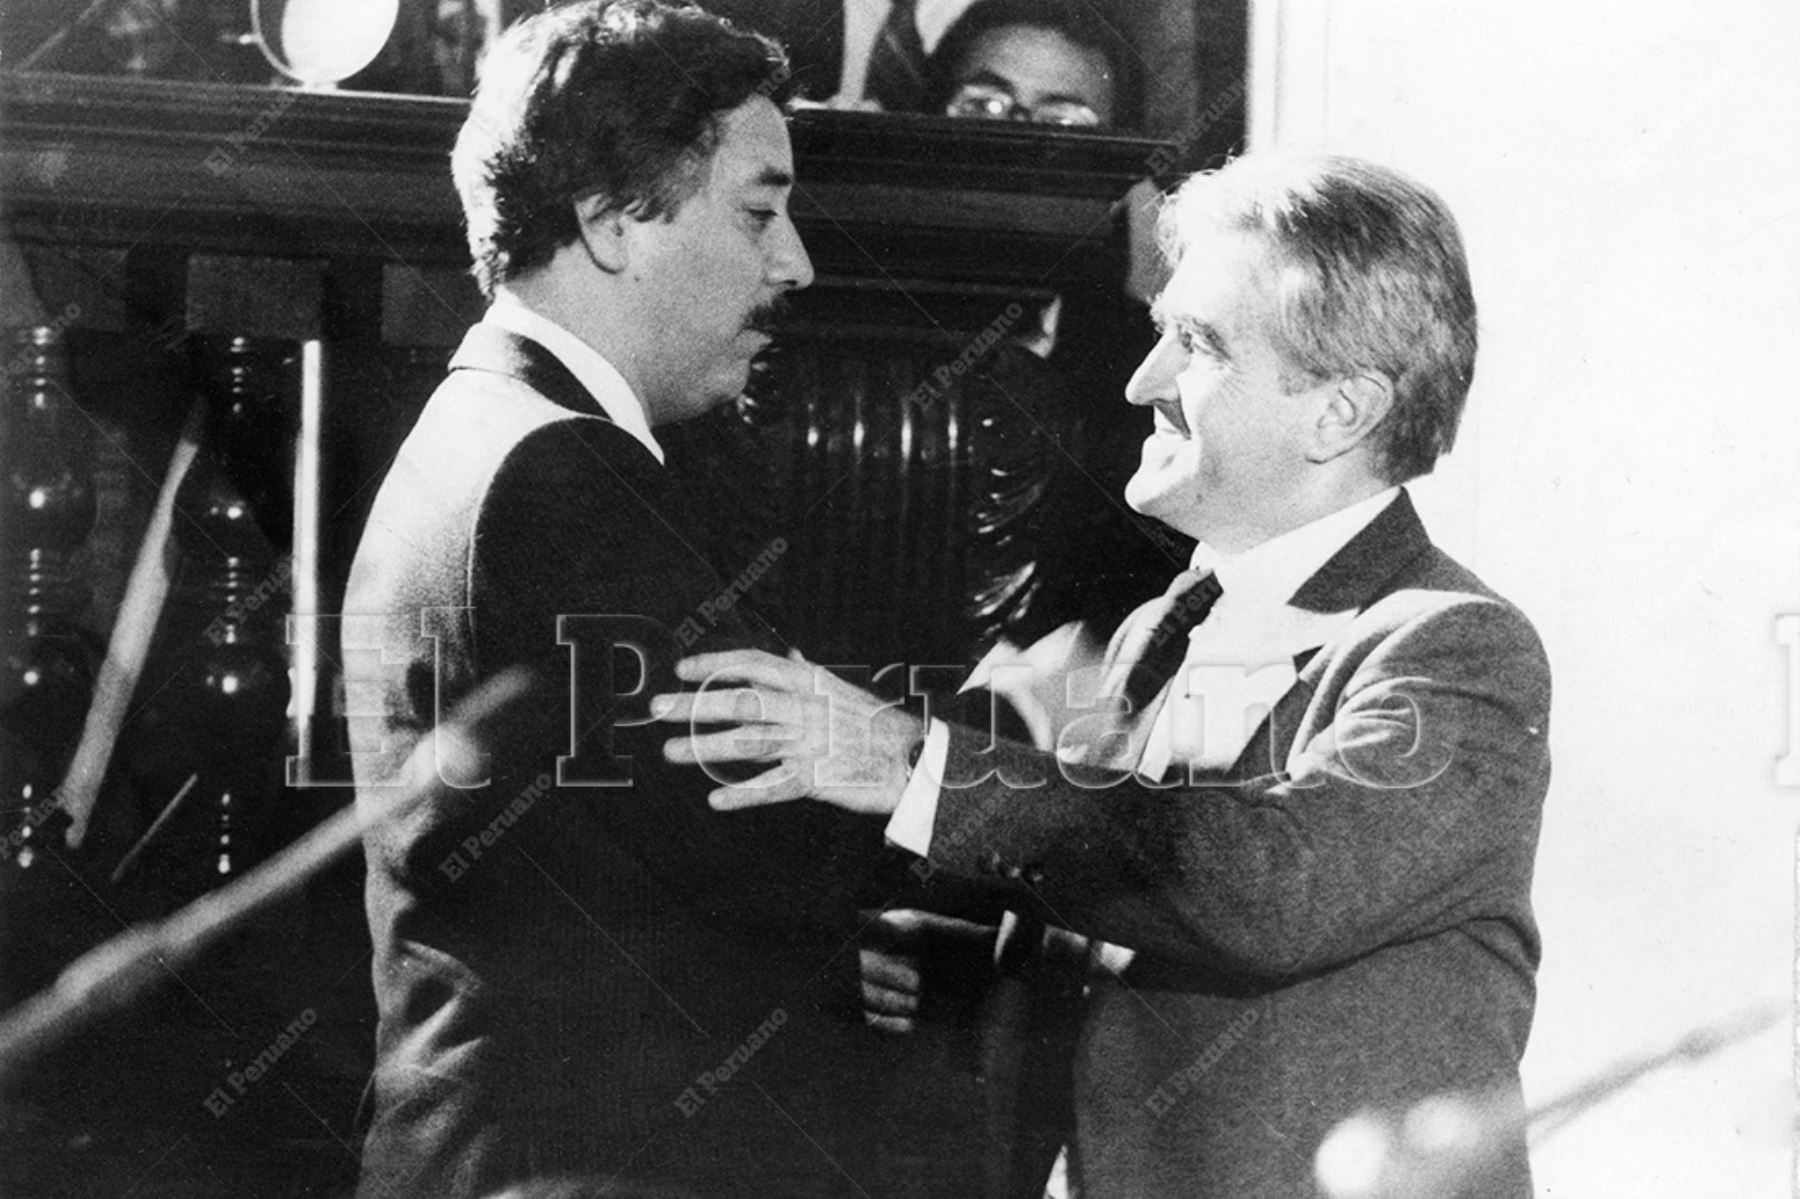 Lima - 4 setiembre 1987 / El senador aprista Javier Valle Riestra saluda a Enrique Bernales Ballesteros de Izquierda Unida en la Cámara de Senadores. Foto: Archivo Histórico de El Peruano / Orlando Adrianzén